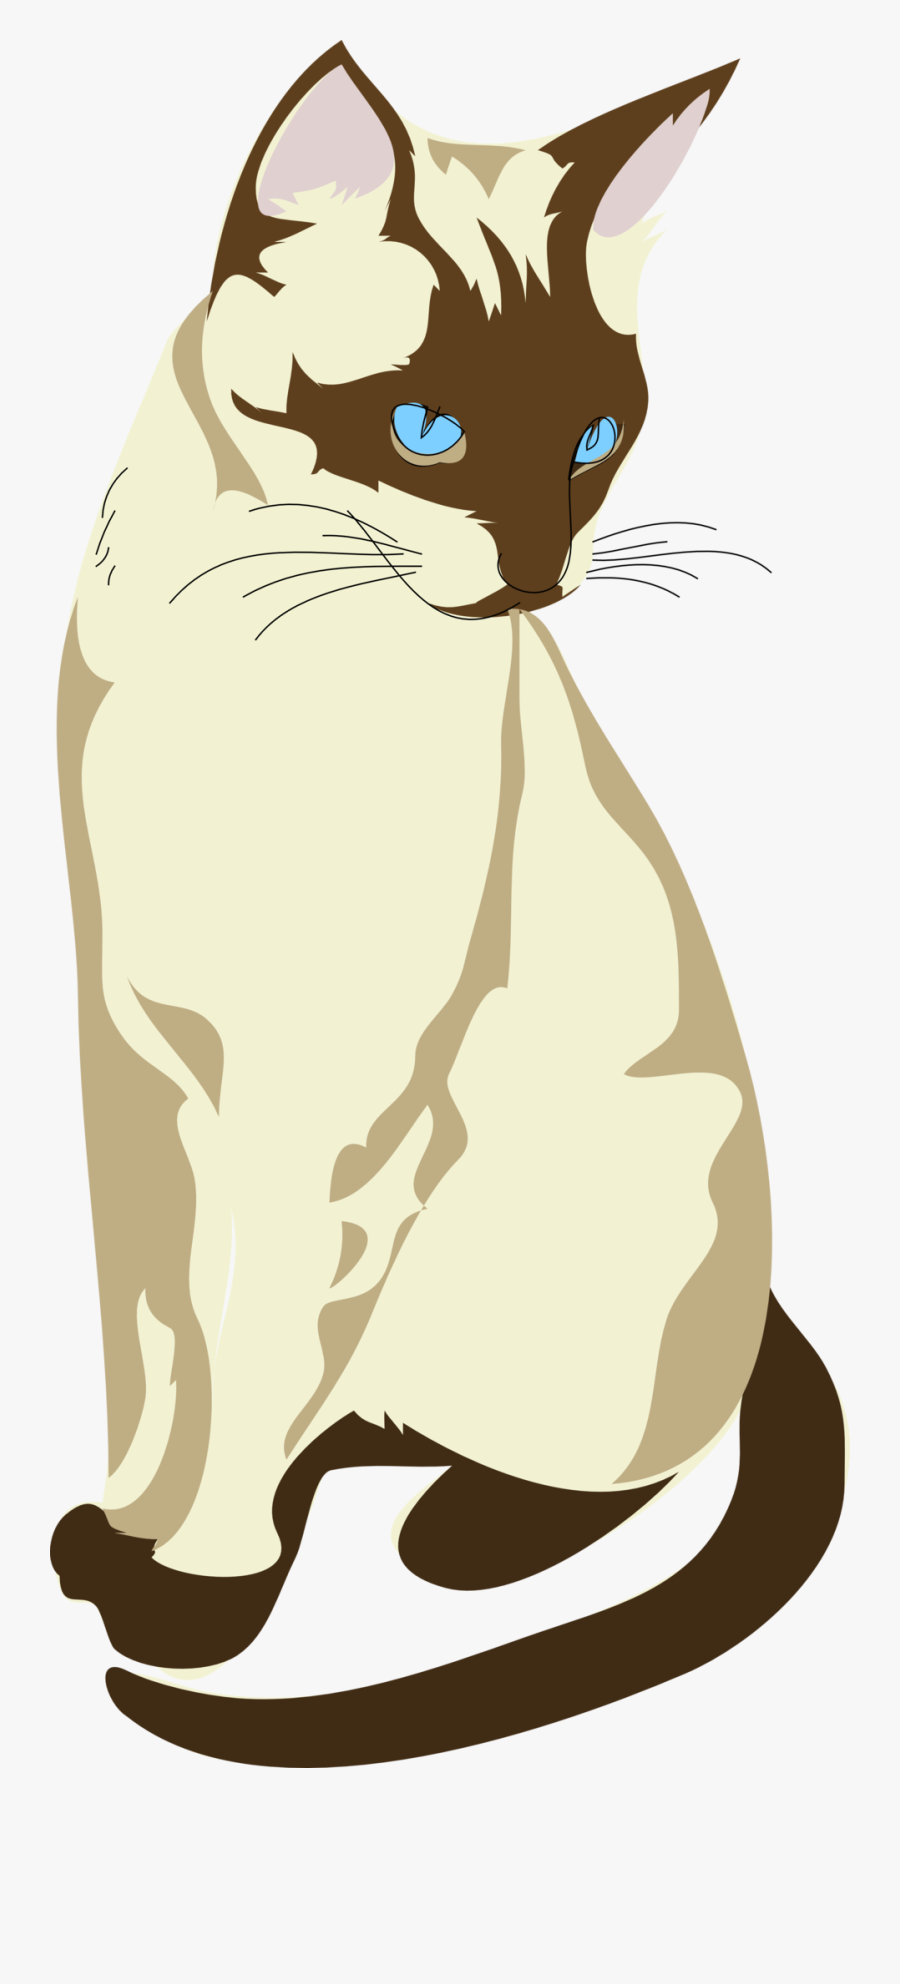 Public Domain Clip Art Image - Siamese Cat Clipart, Transparent Clipart